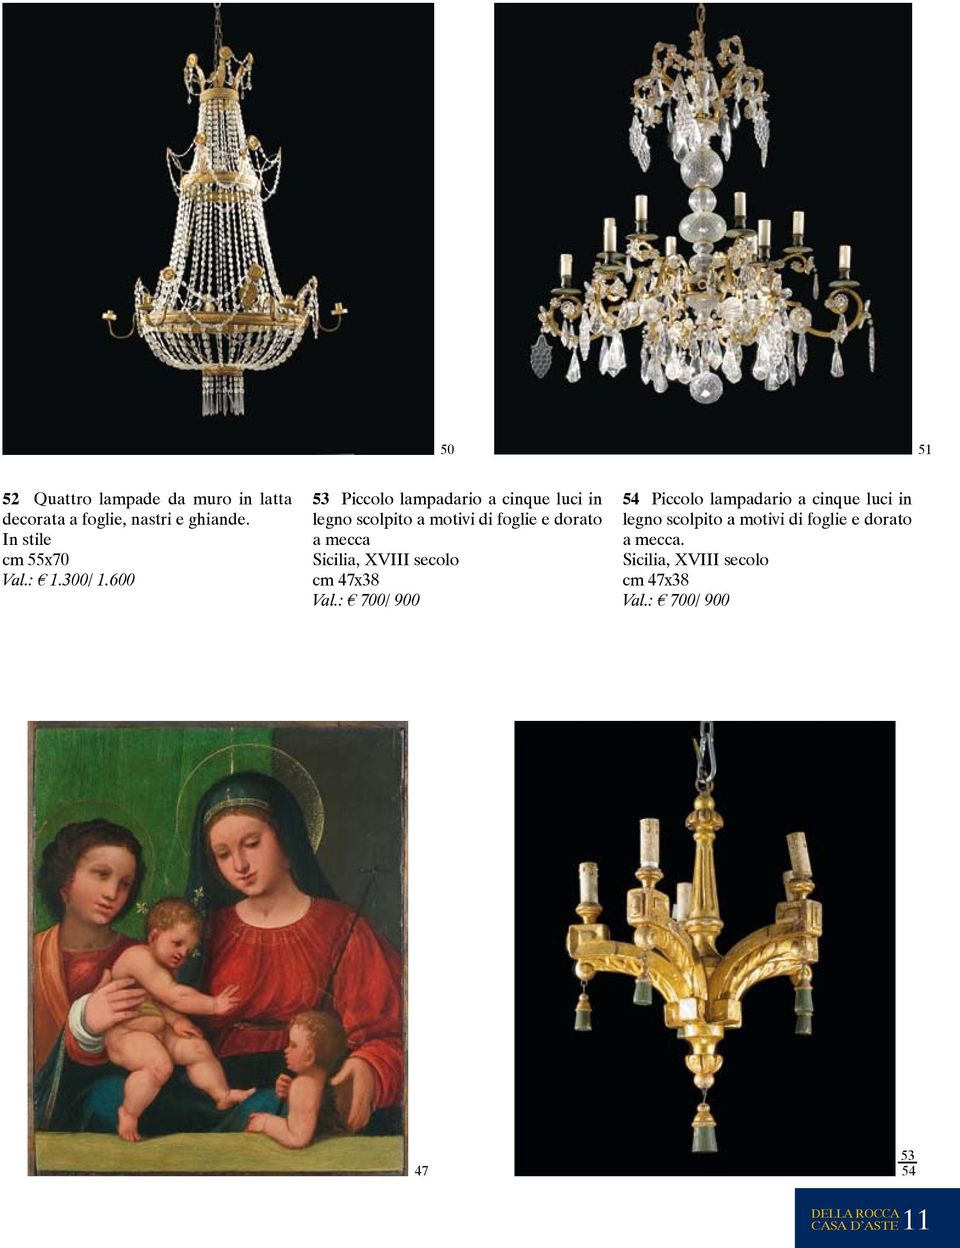 600 53 Piccolo lampadario a cinque luci in legno scolpito a motivi di foglie e dorato a mecca Sicilia,